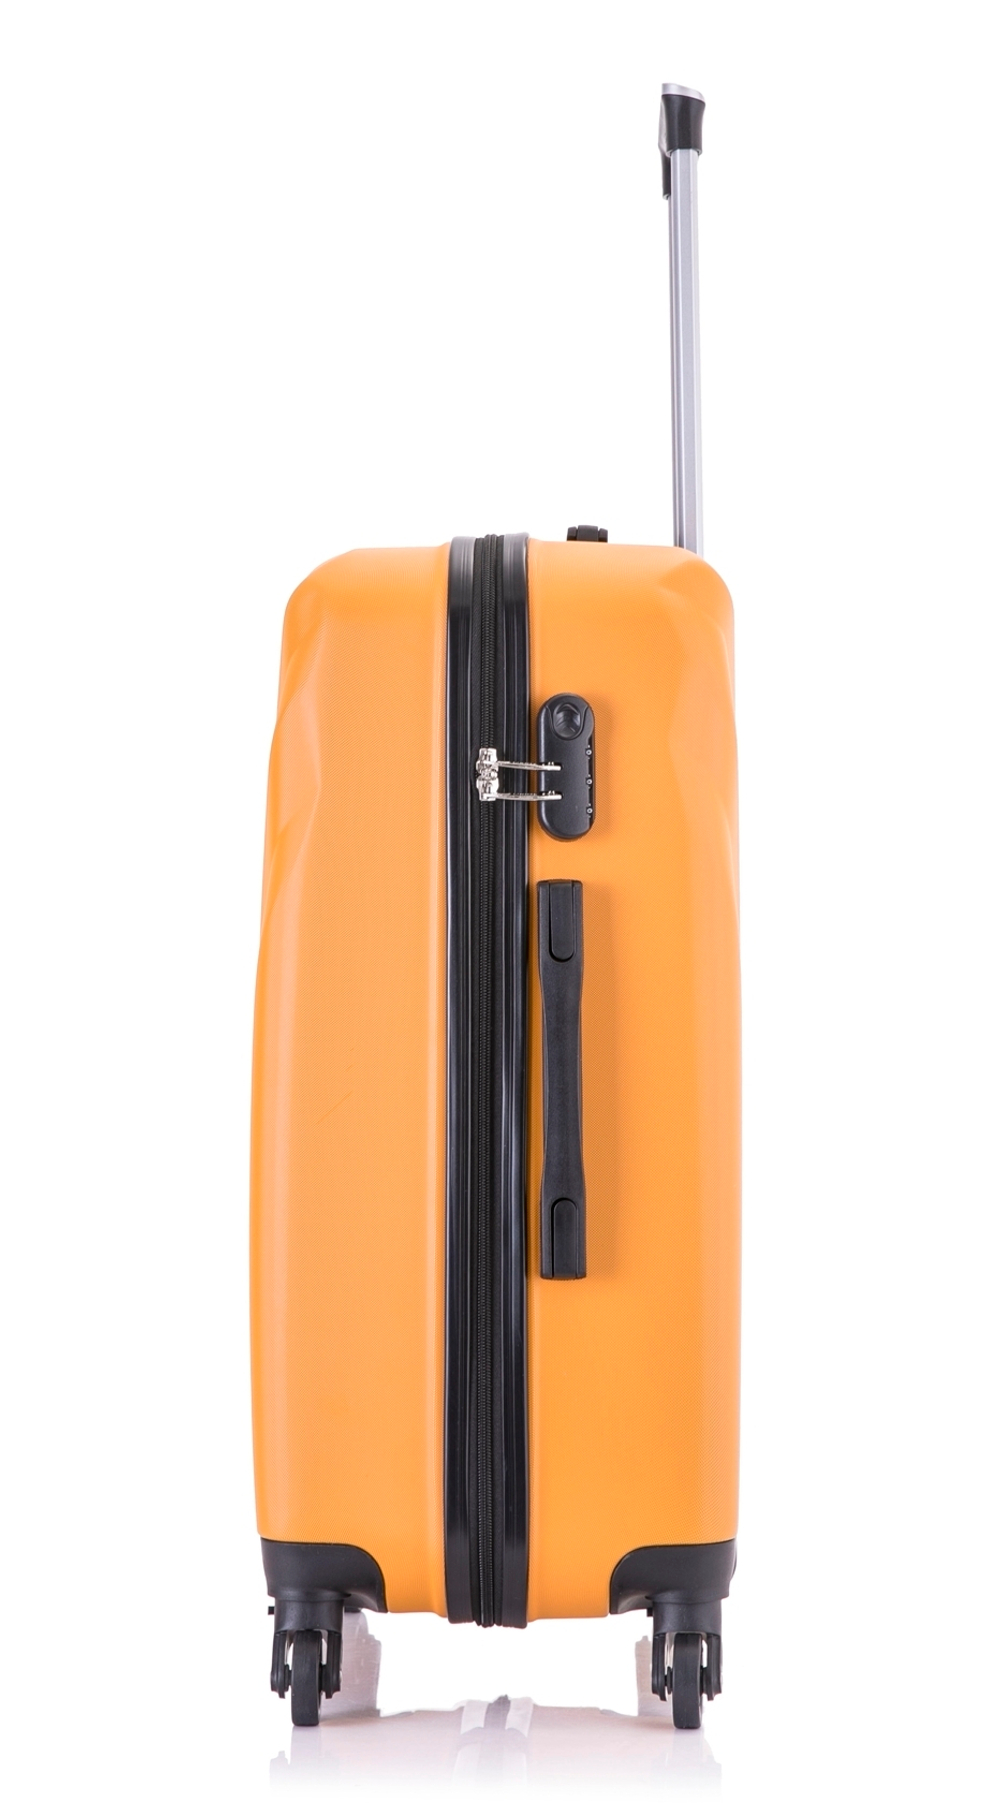 Чемодан ручная кладь L’case Phuket размера S+ (58х37х23 см), объем 45 литров, вес 2,2 кг, Оранжевый